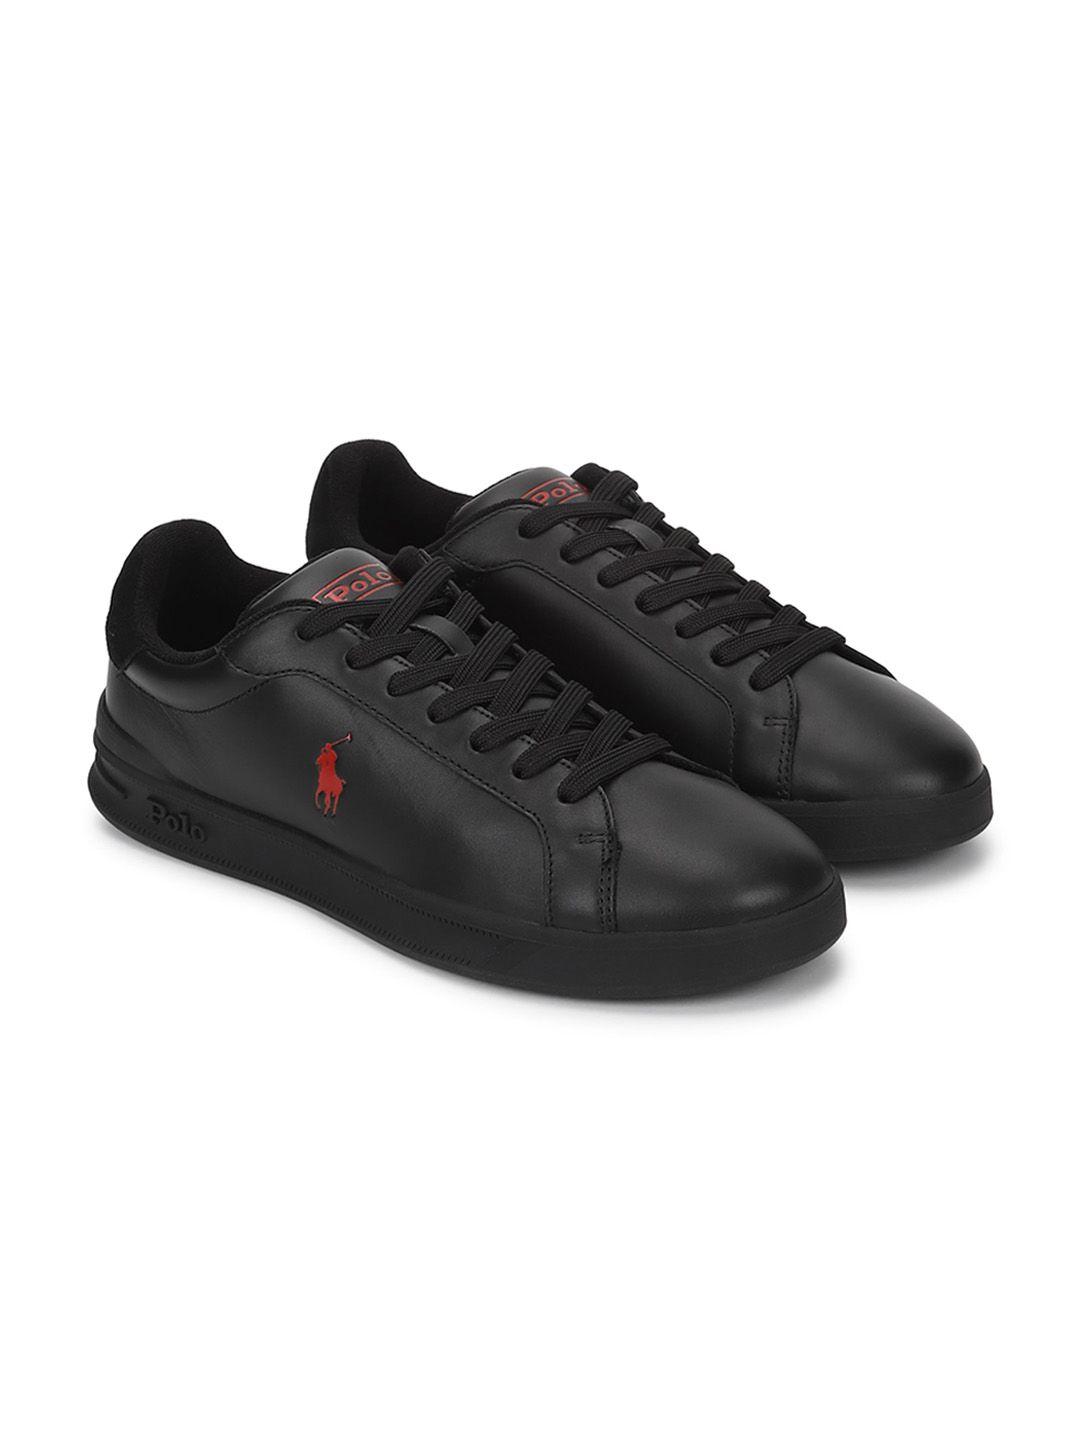 polo ralph lauren men side logo leather sneakers